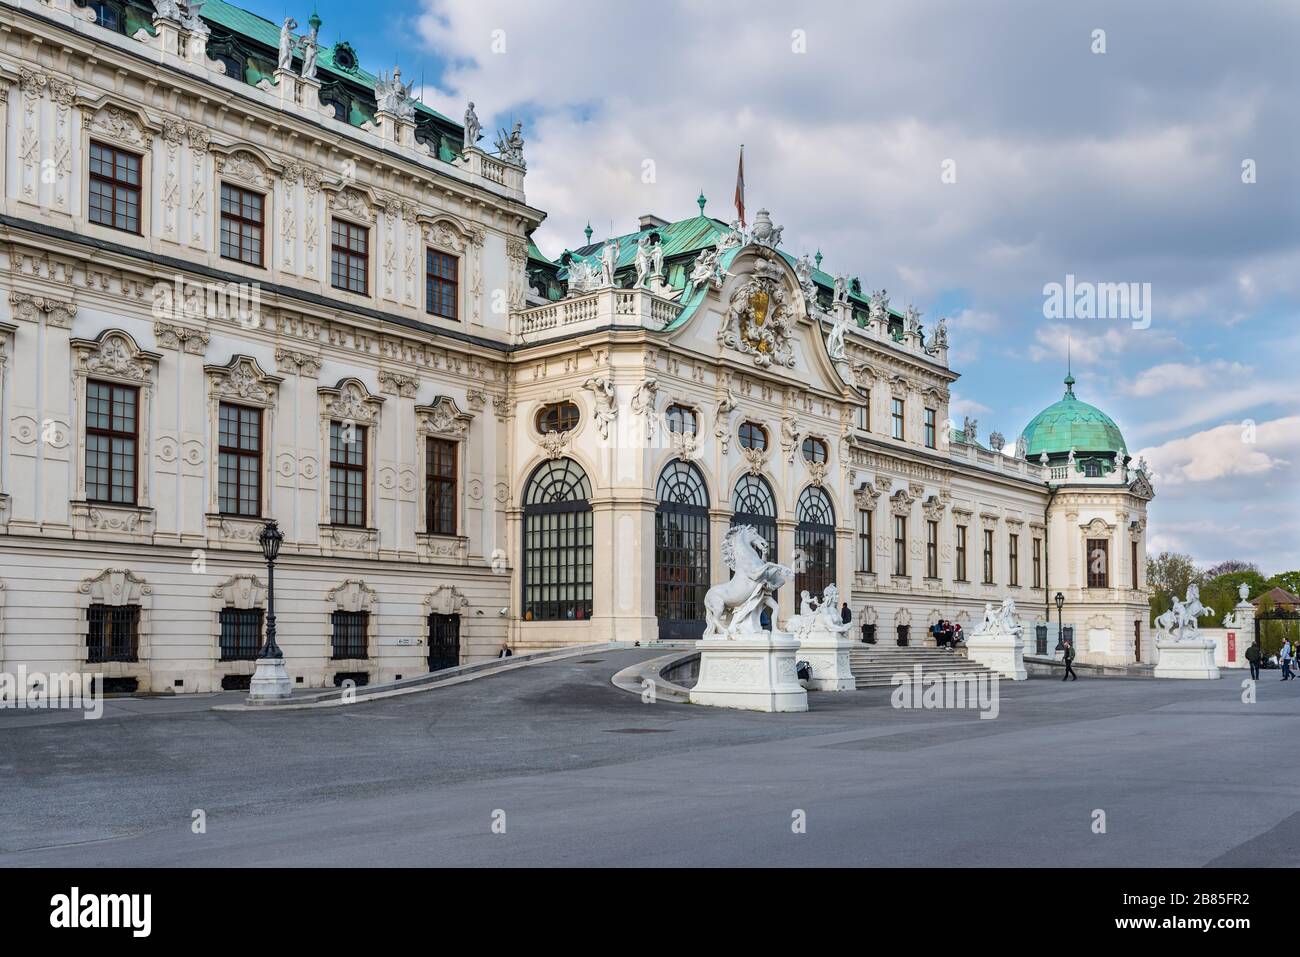 Viena, Austria - 17 de abril de 2019: El palacio del Alto Belvedere. Palacio principal complejo Belvedere en Viena, Austria, residencia de verano para el Príncipe Eugenio de Foto de stock